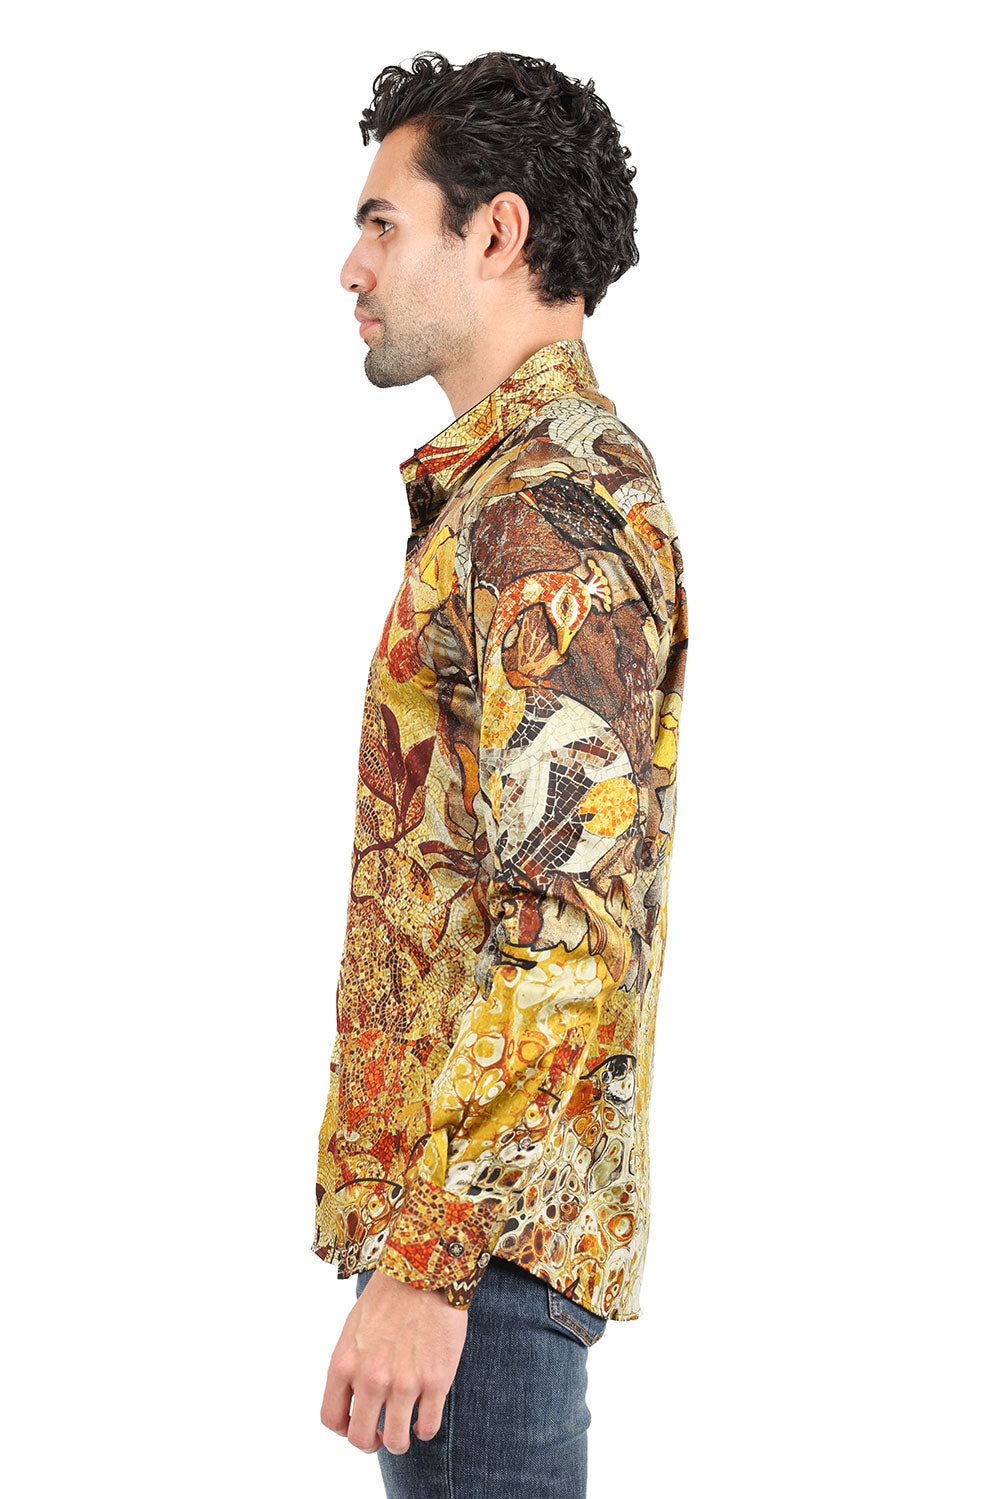 BARABAS men's Peacock Abstract printed long sleeve shirts 2SP31